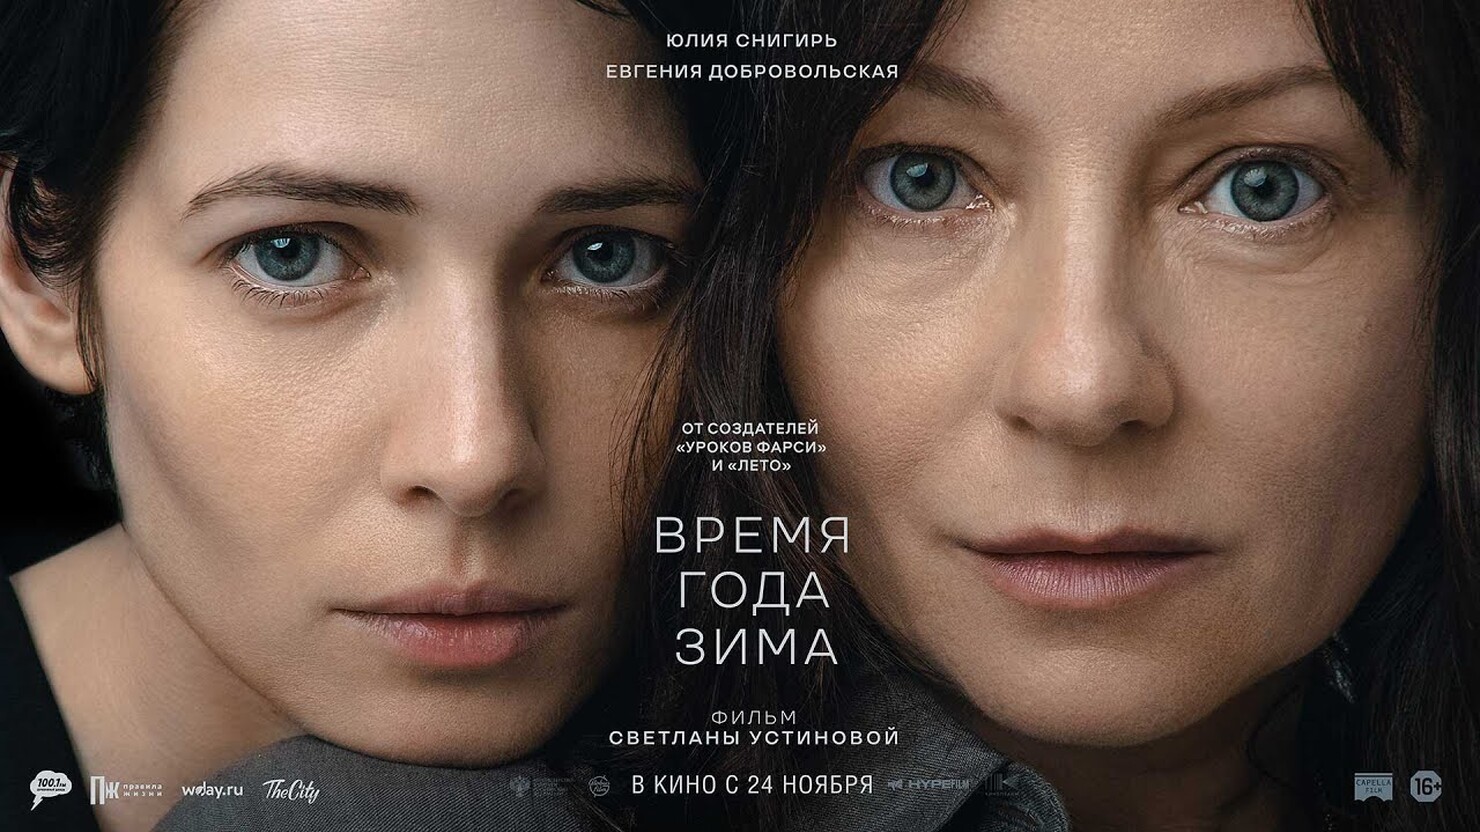 Юлия Снигирь страдает на пару с Евгенией Добровольской в трейлере драмы "Время года зима"